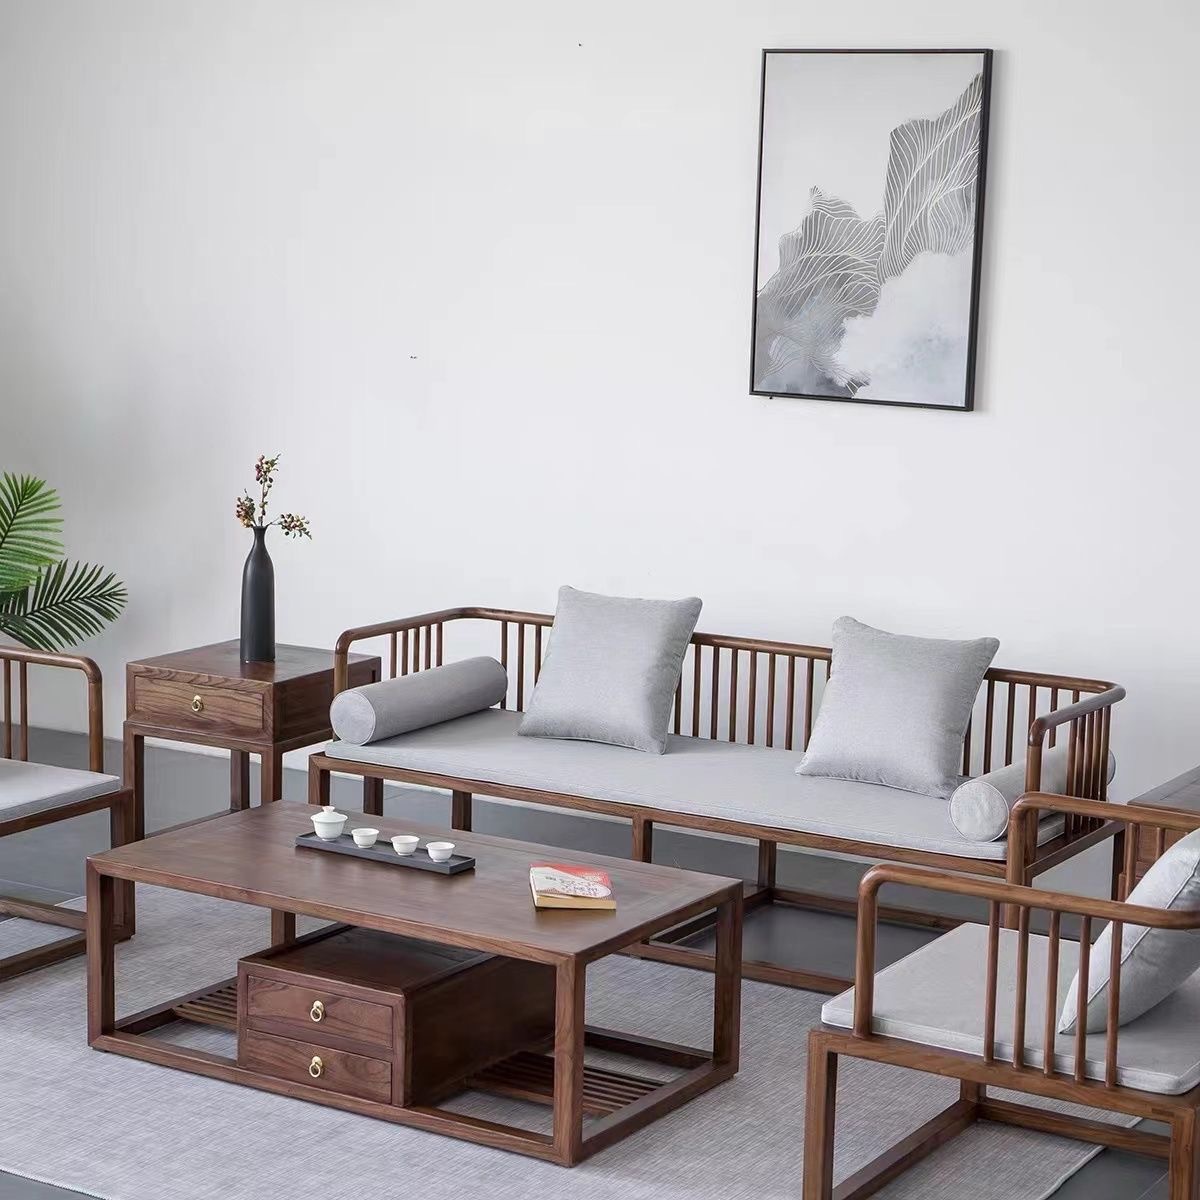 新中式老榆木家具沙发仿古床小户型实木老门板罗汉床推拉床沙发榻